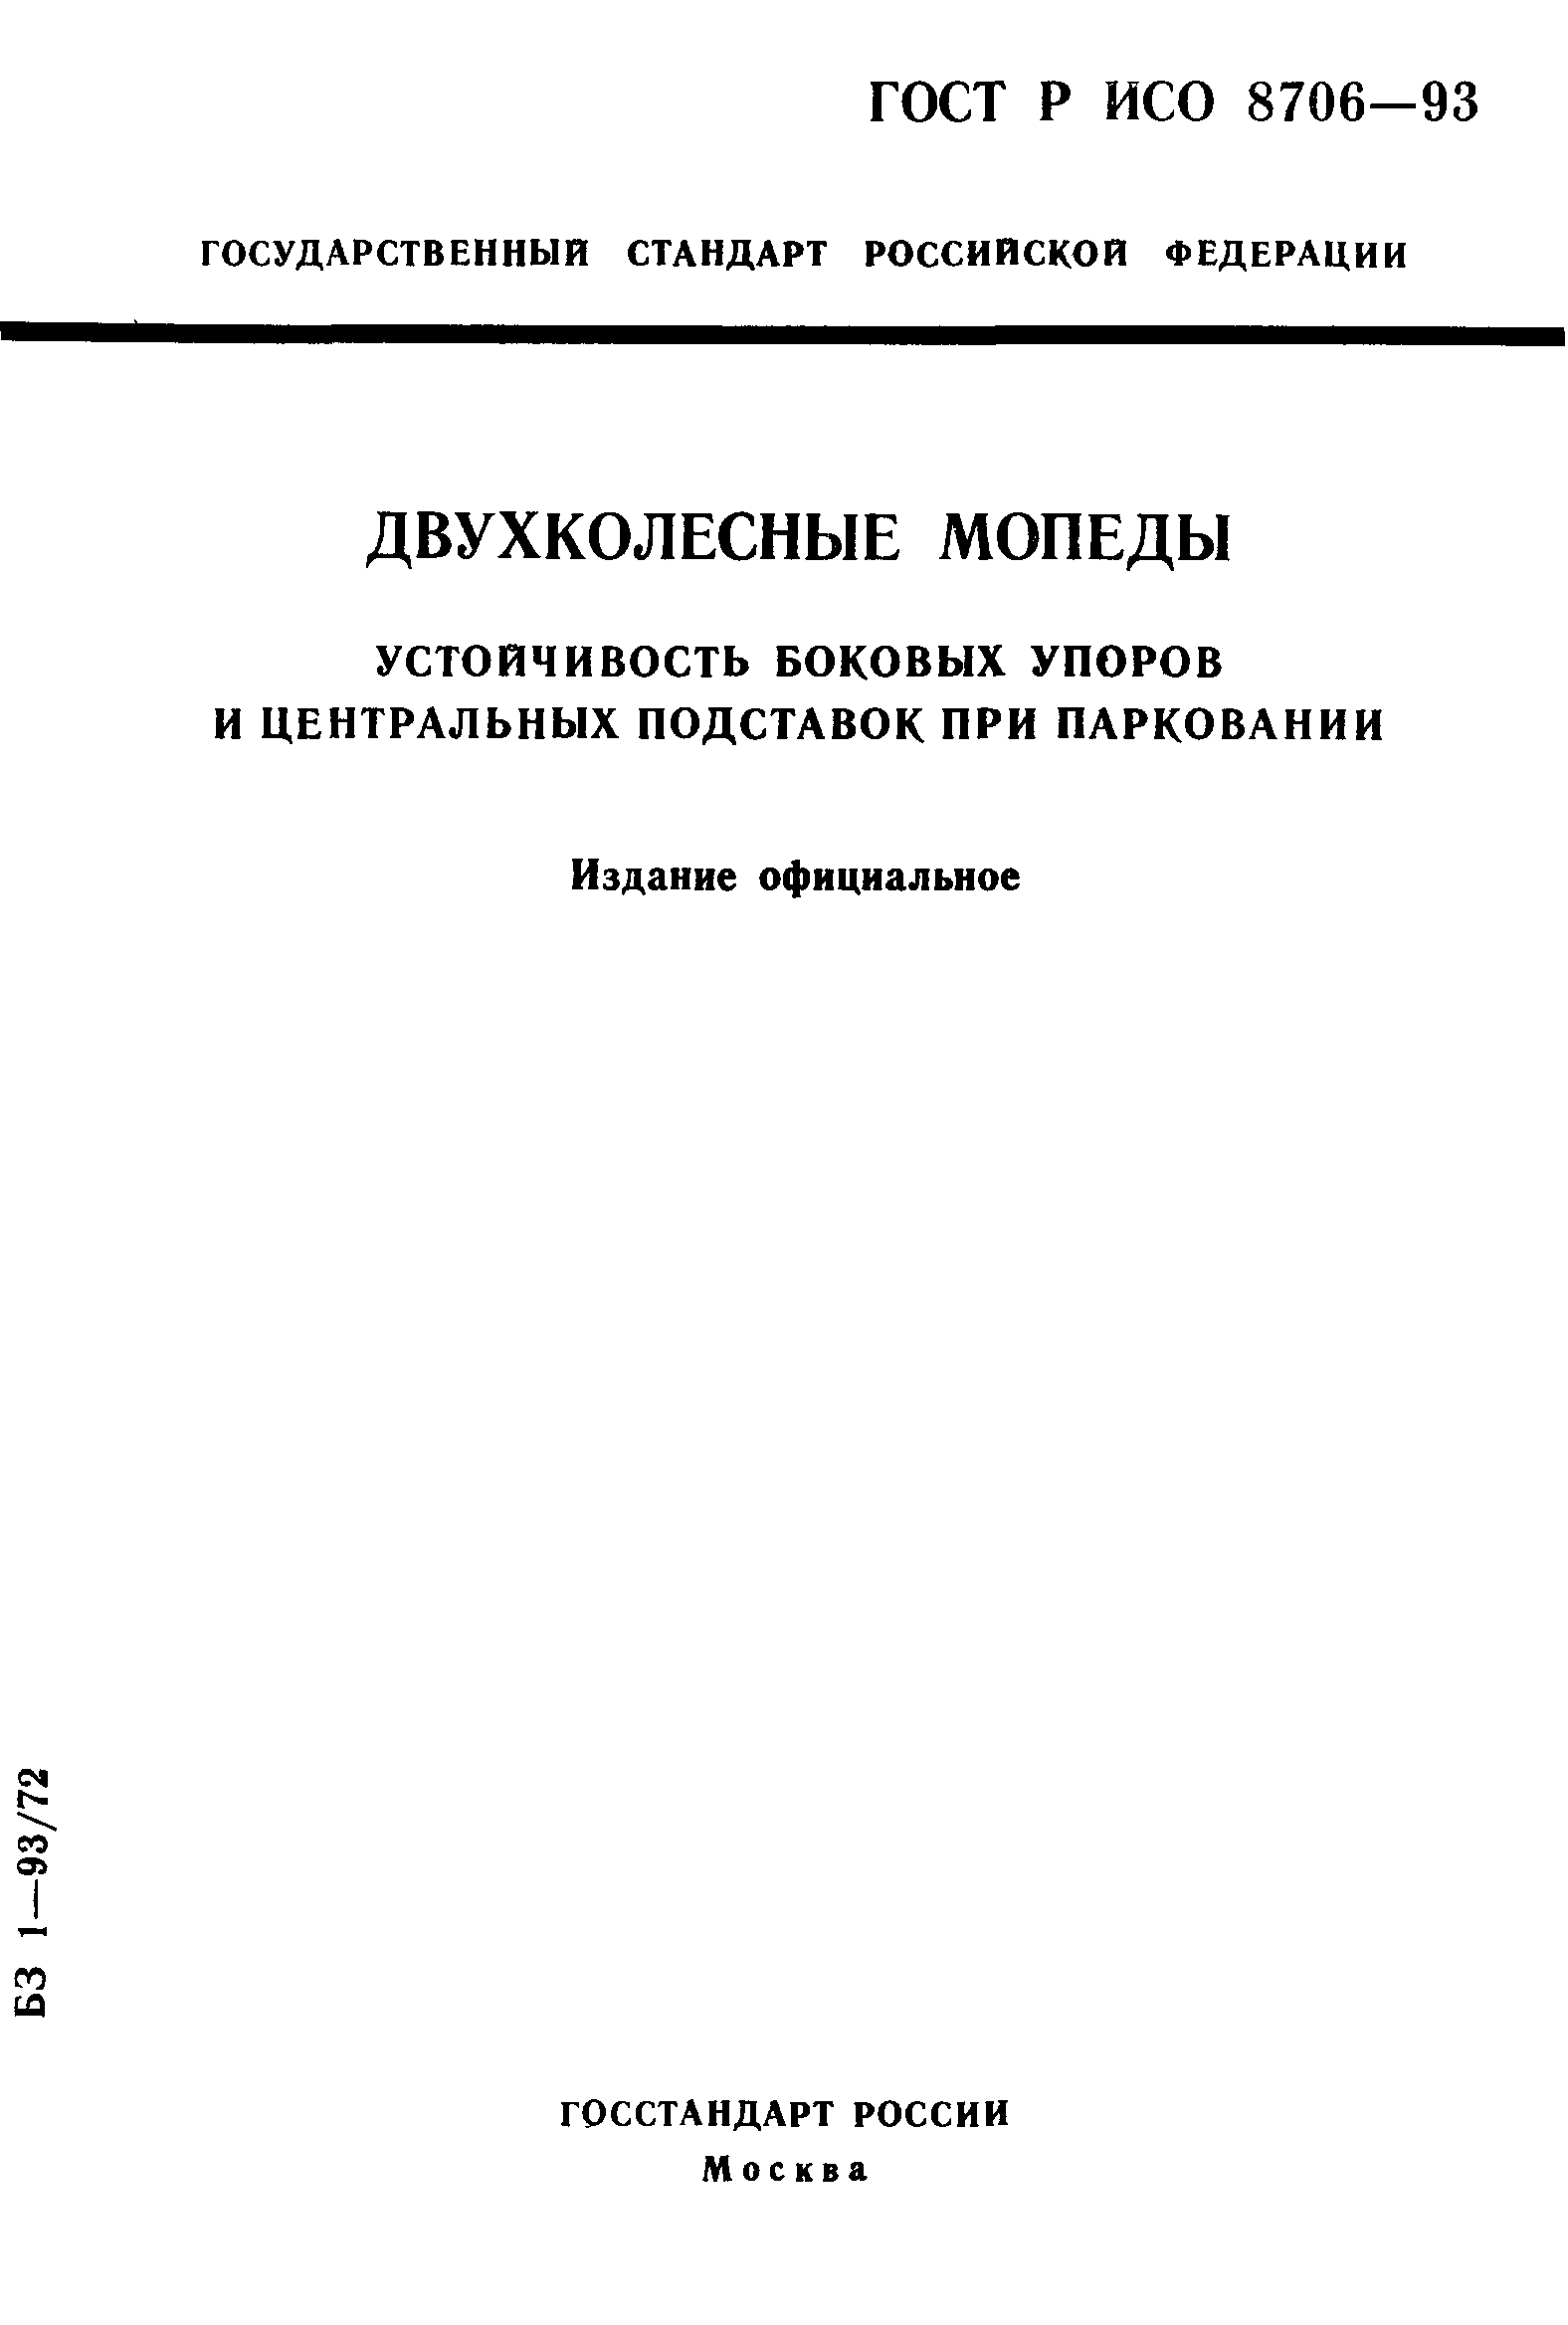 ГОСТ Р ИСО 8706-93